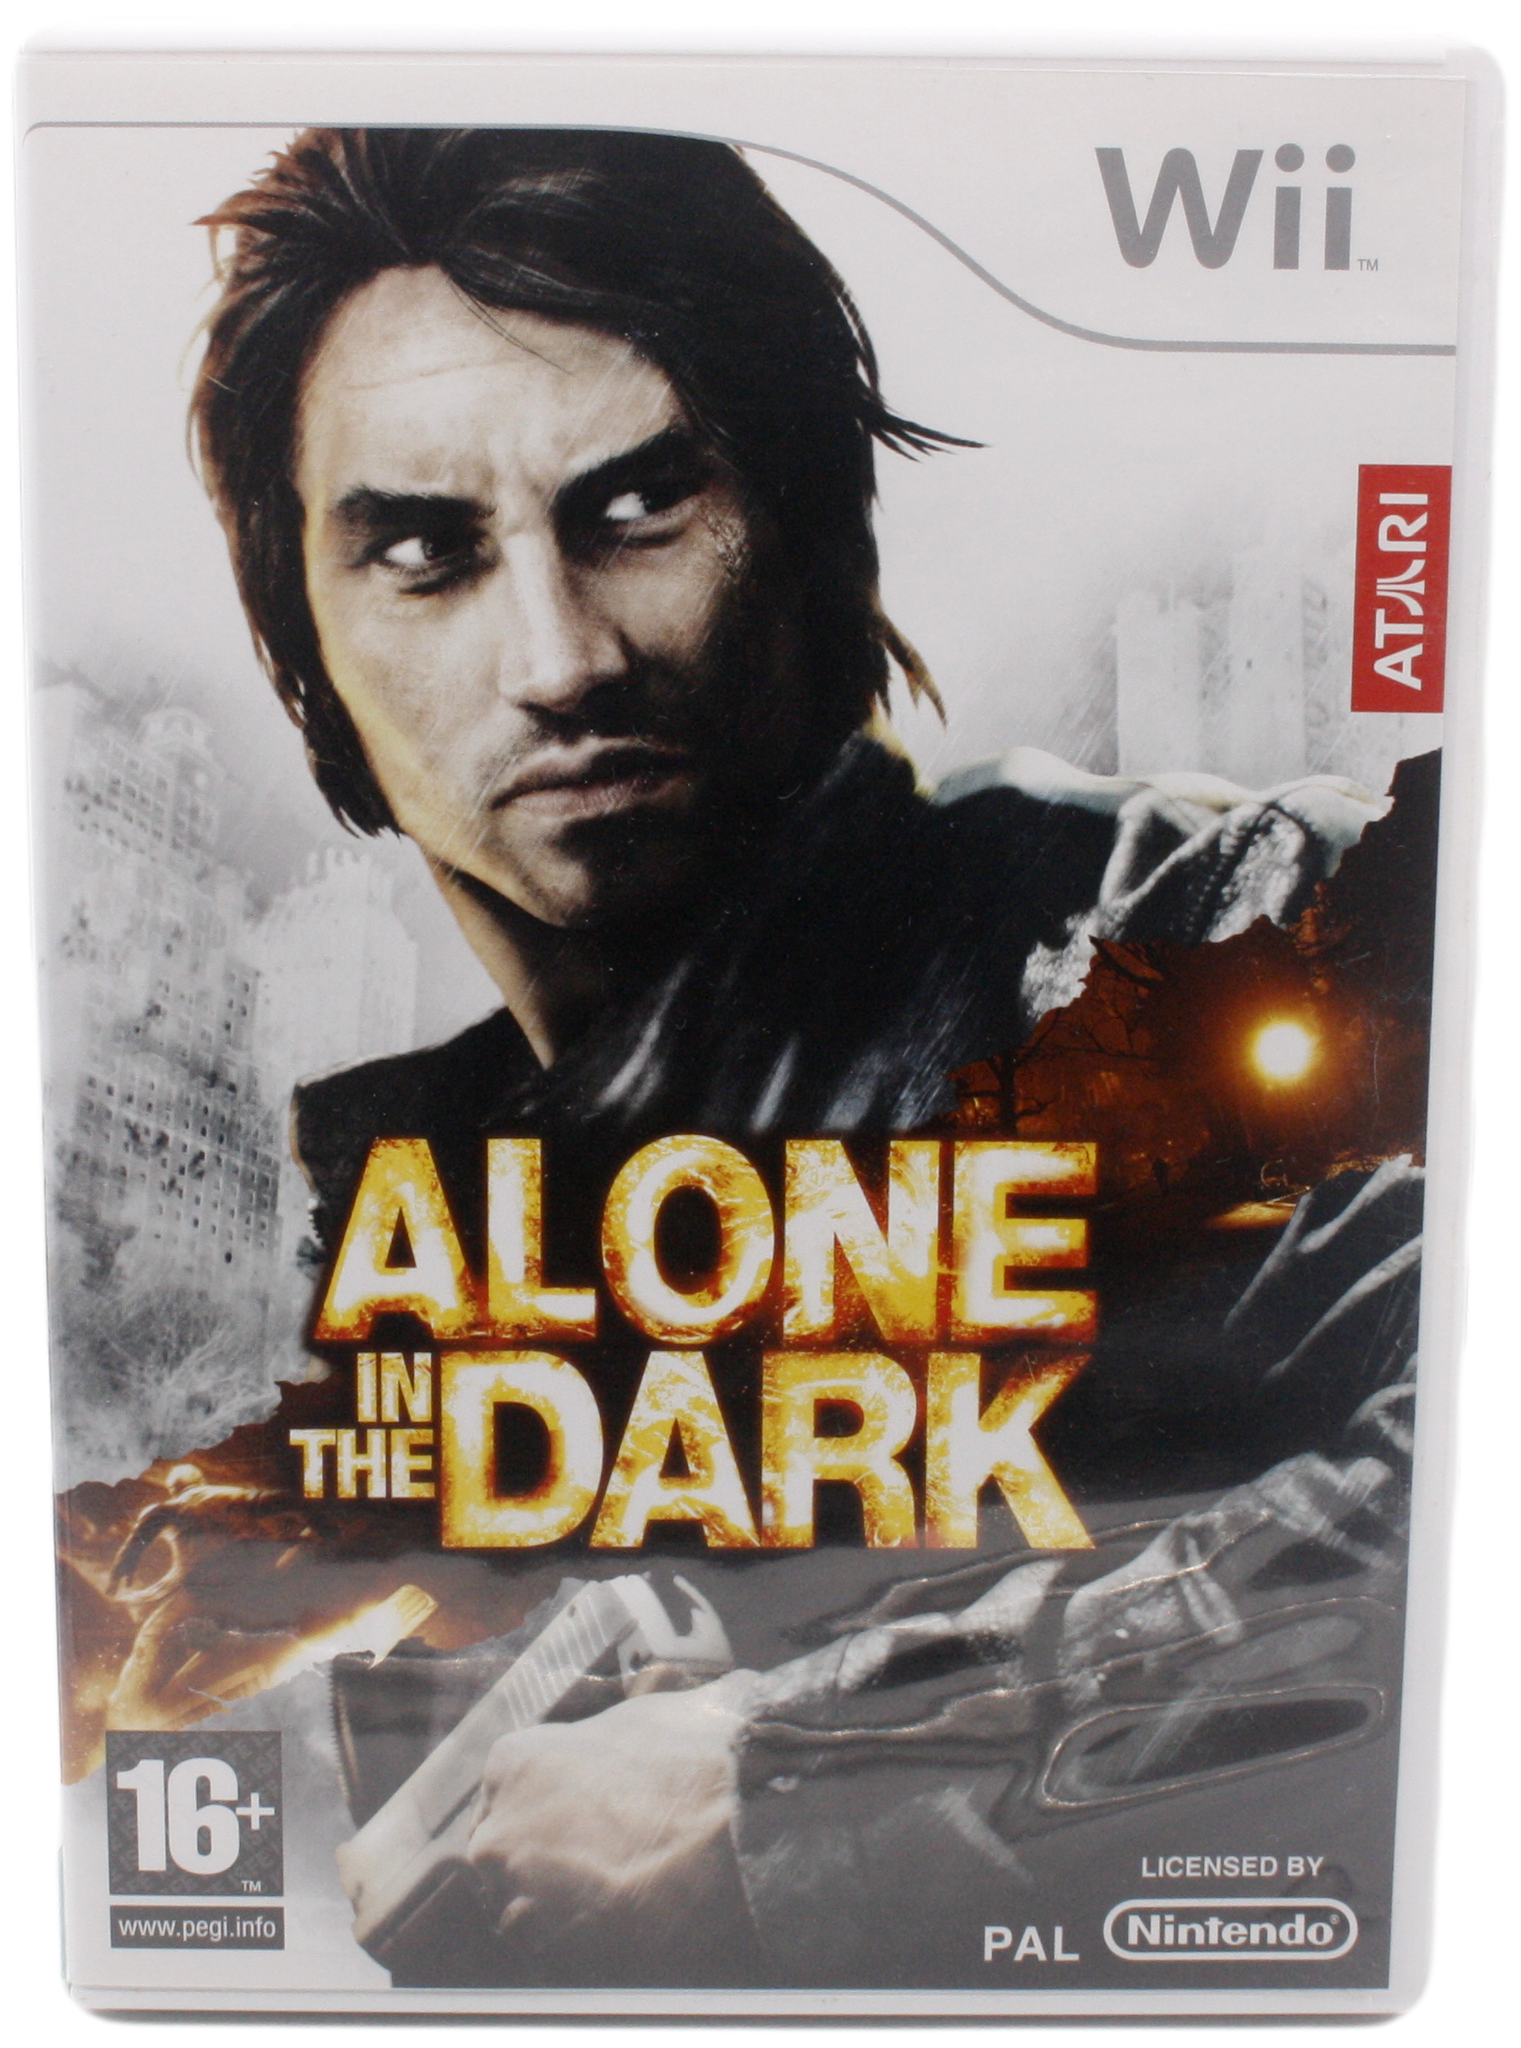 Alone in the Dark U.Manual (Wii)